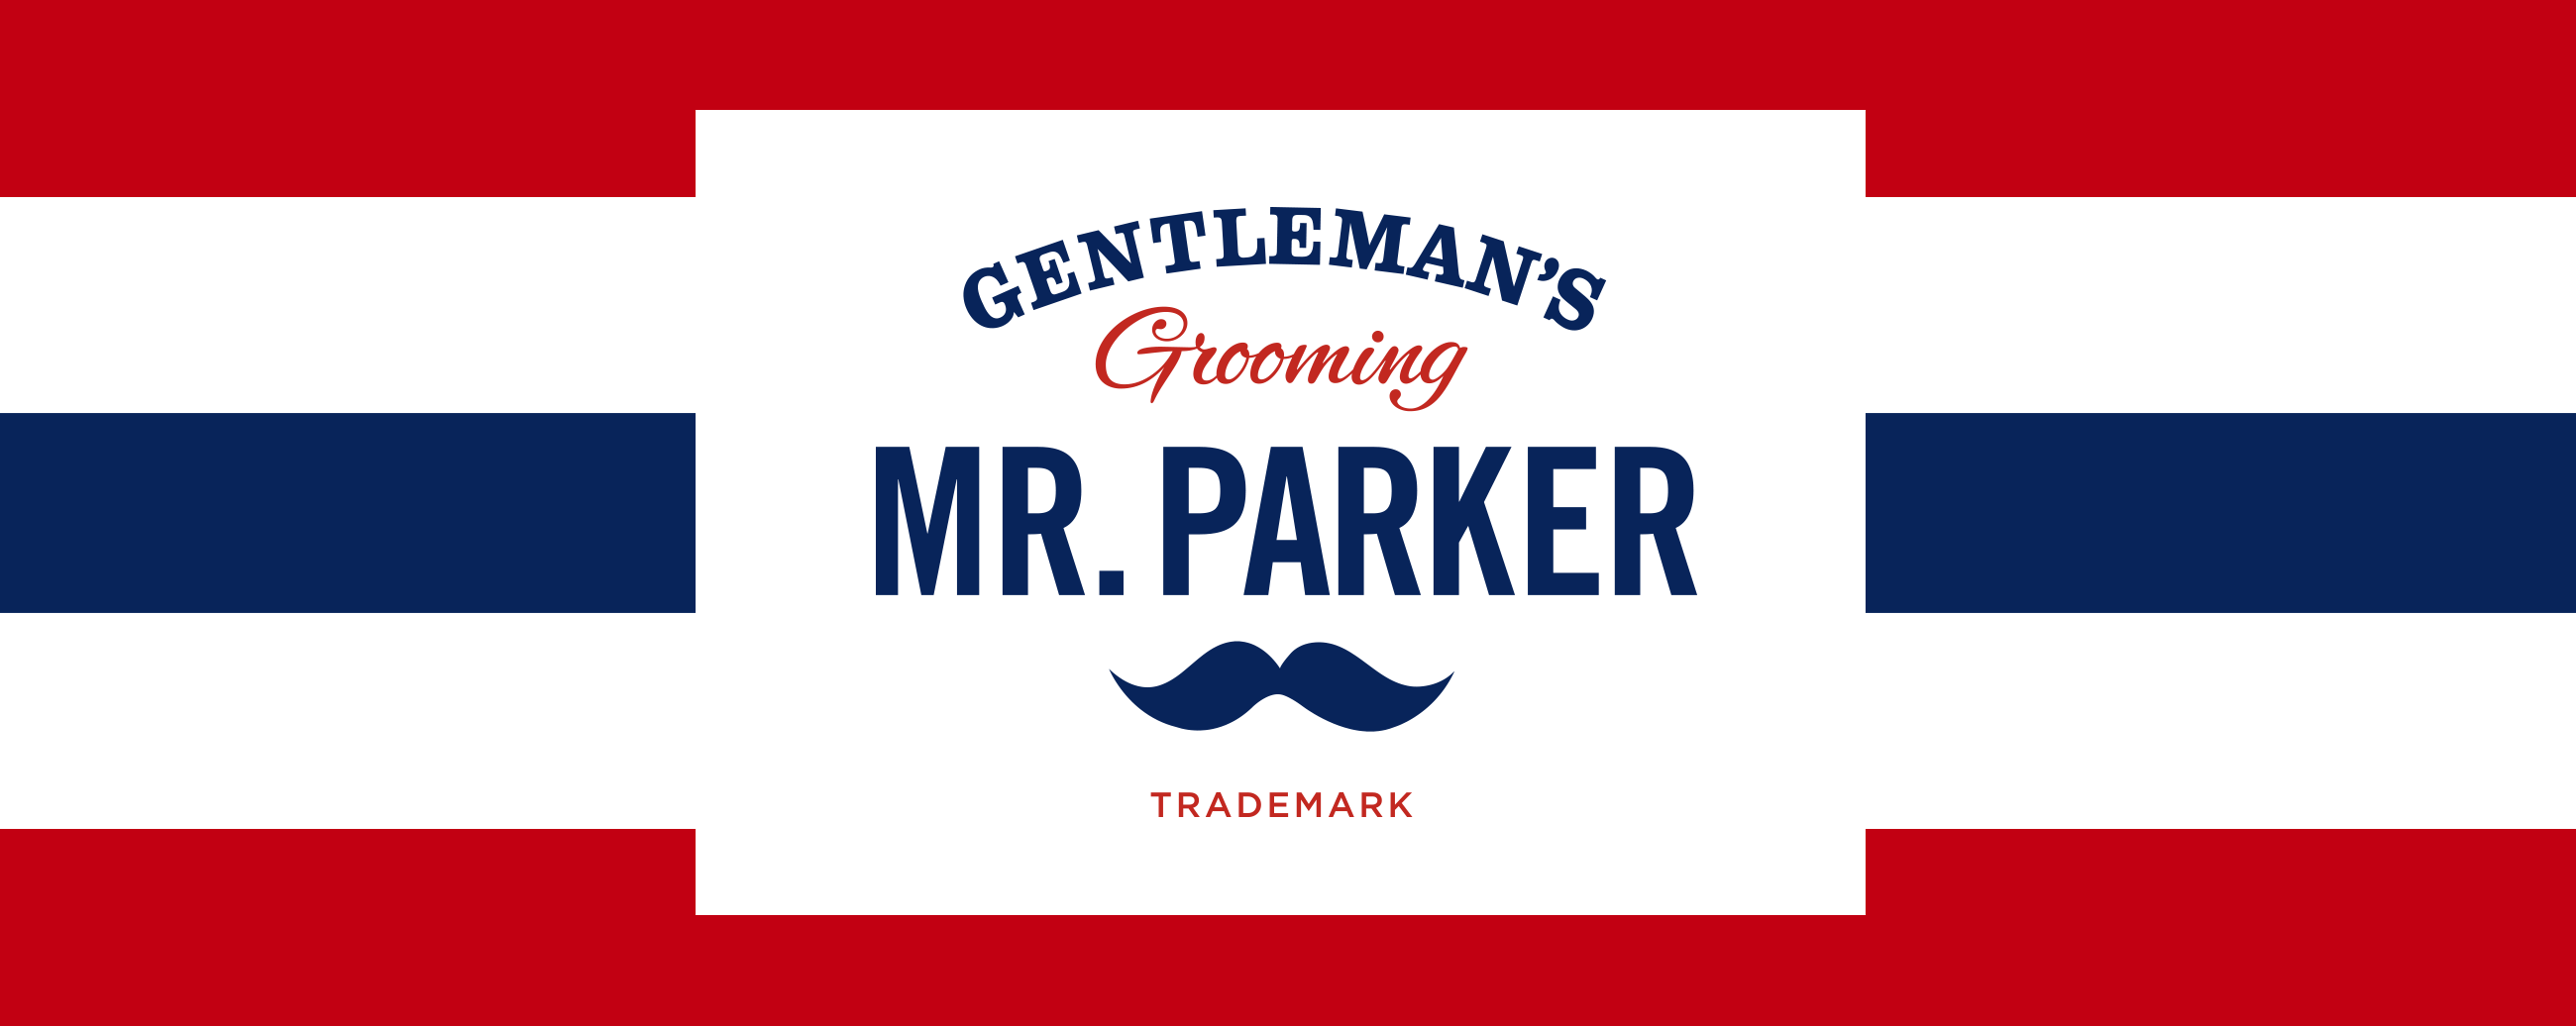 Mr. Parker Gentlemans grooming logo. Visuell identitet visual identity.